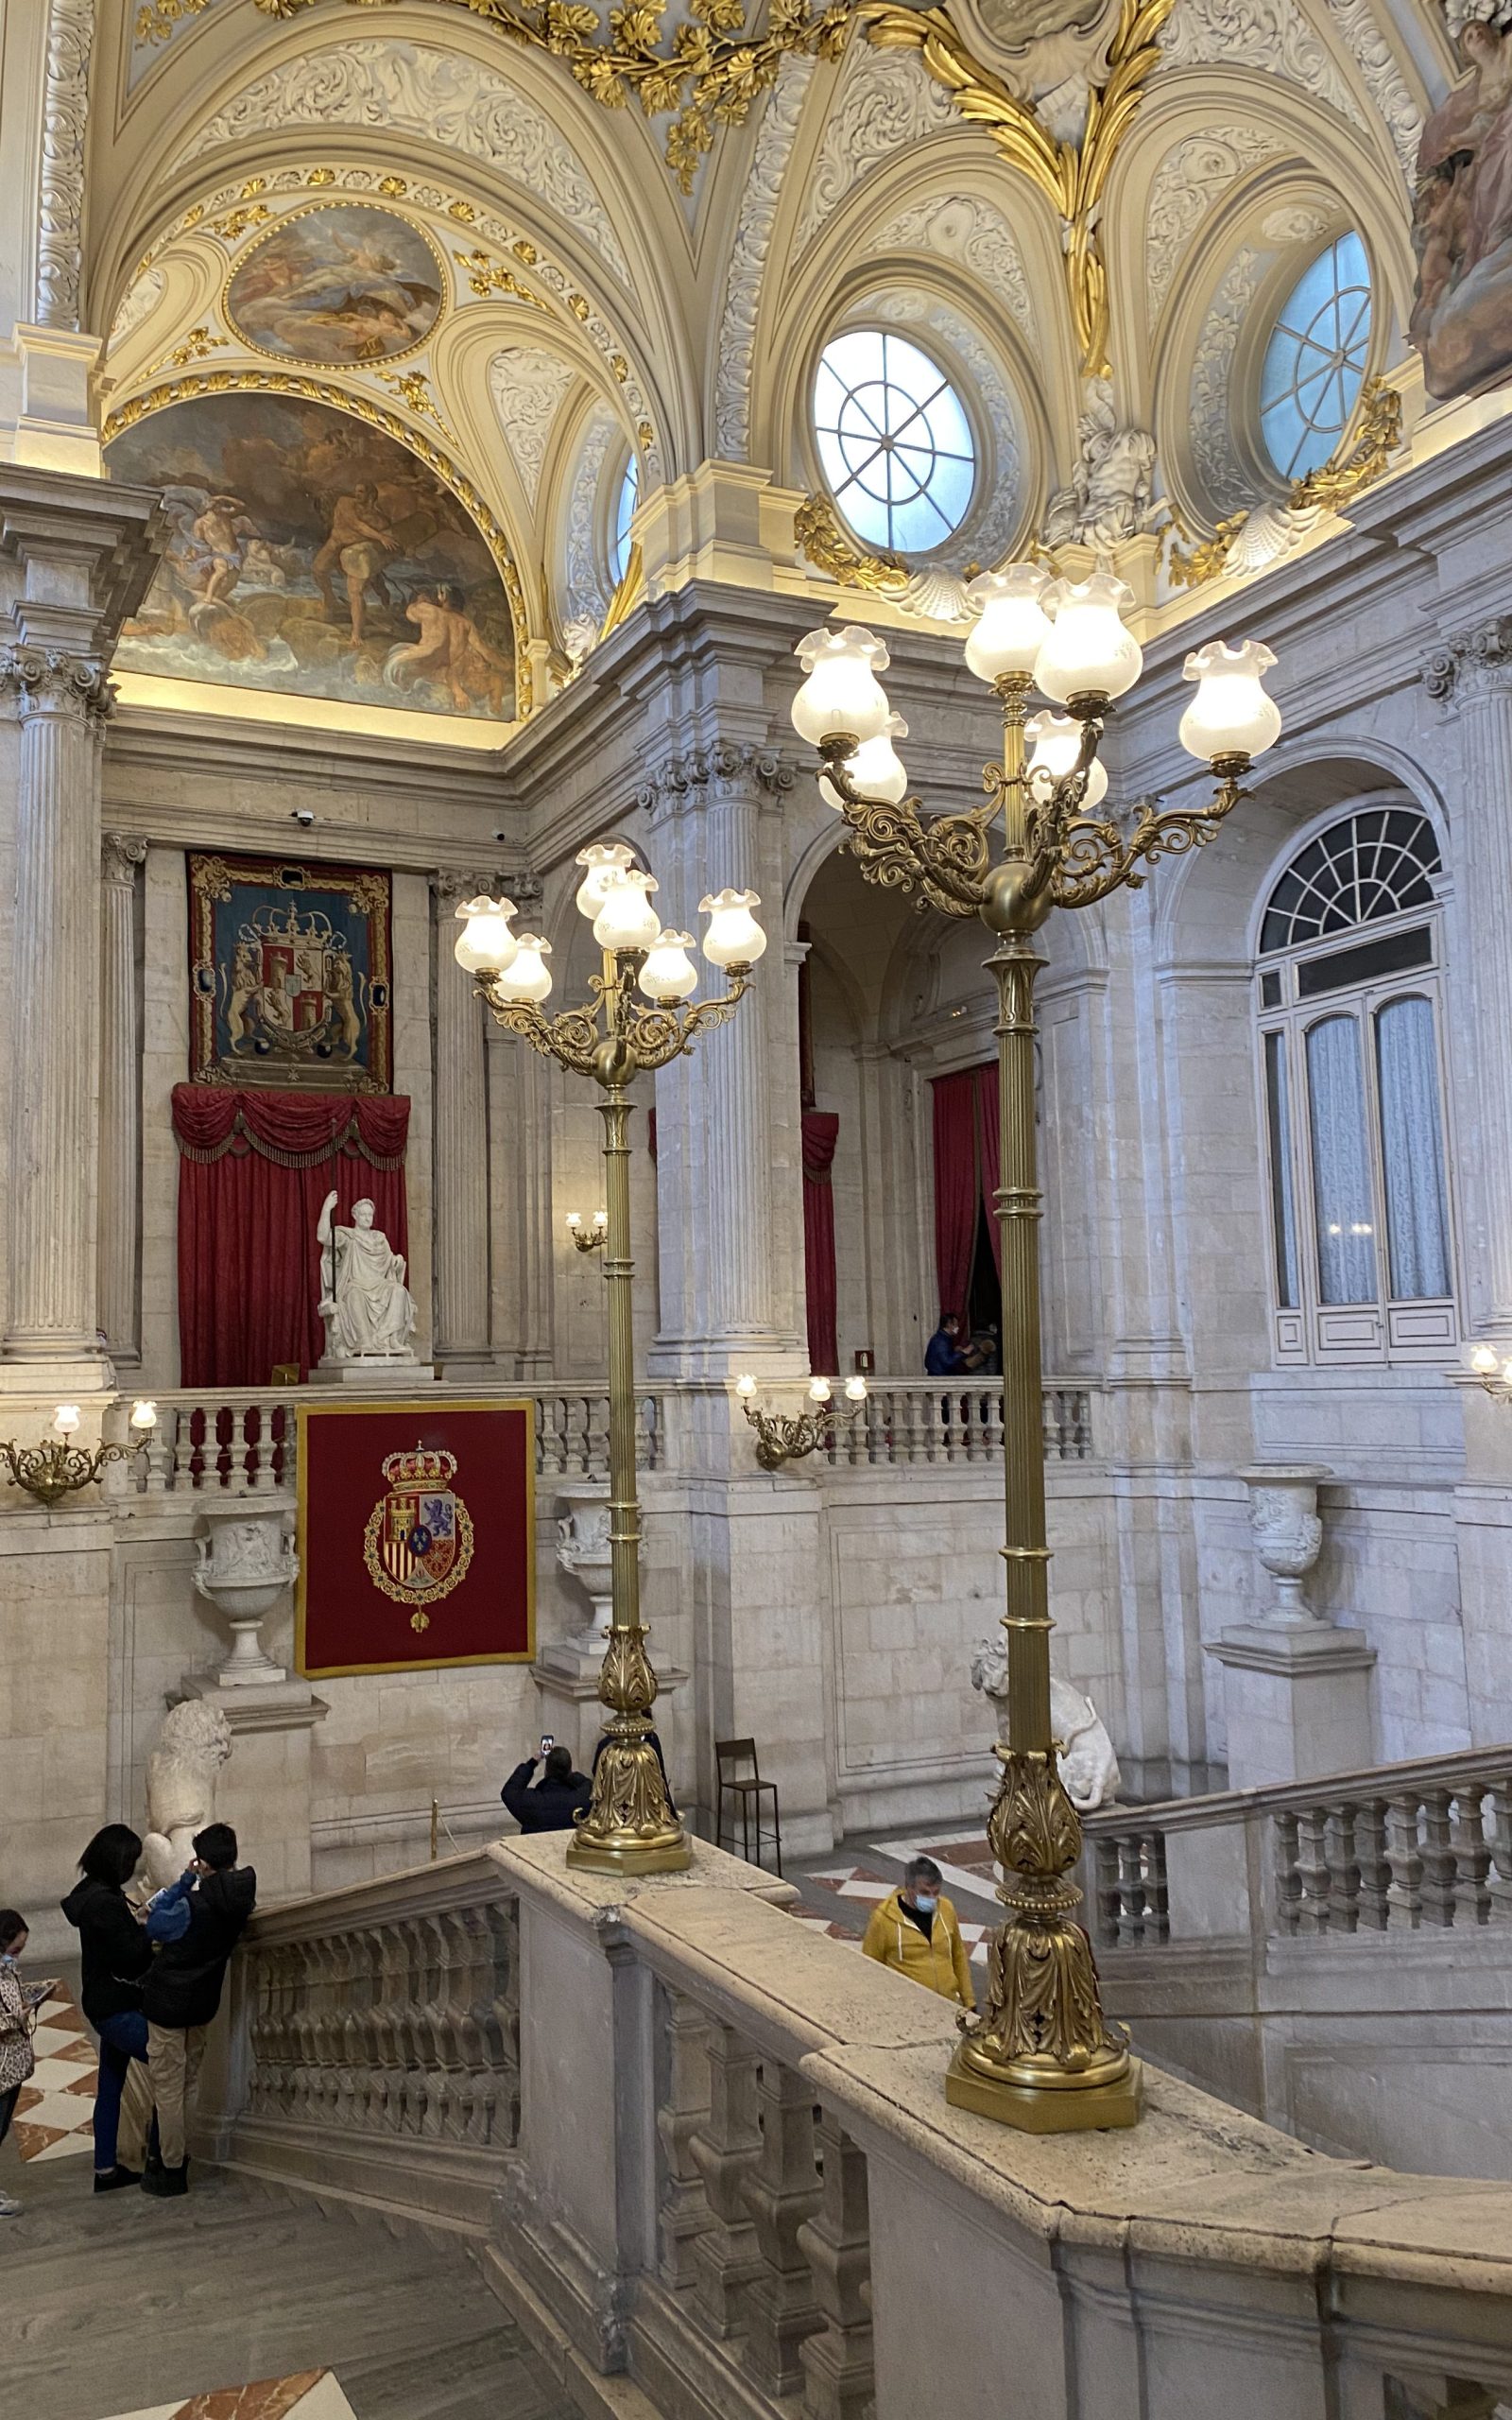 Visita Guiada por el Palacio Real de Madrid | Visitas Guiadas por Madrid - The Guides You Need